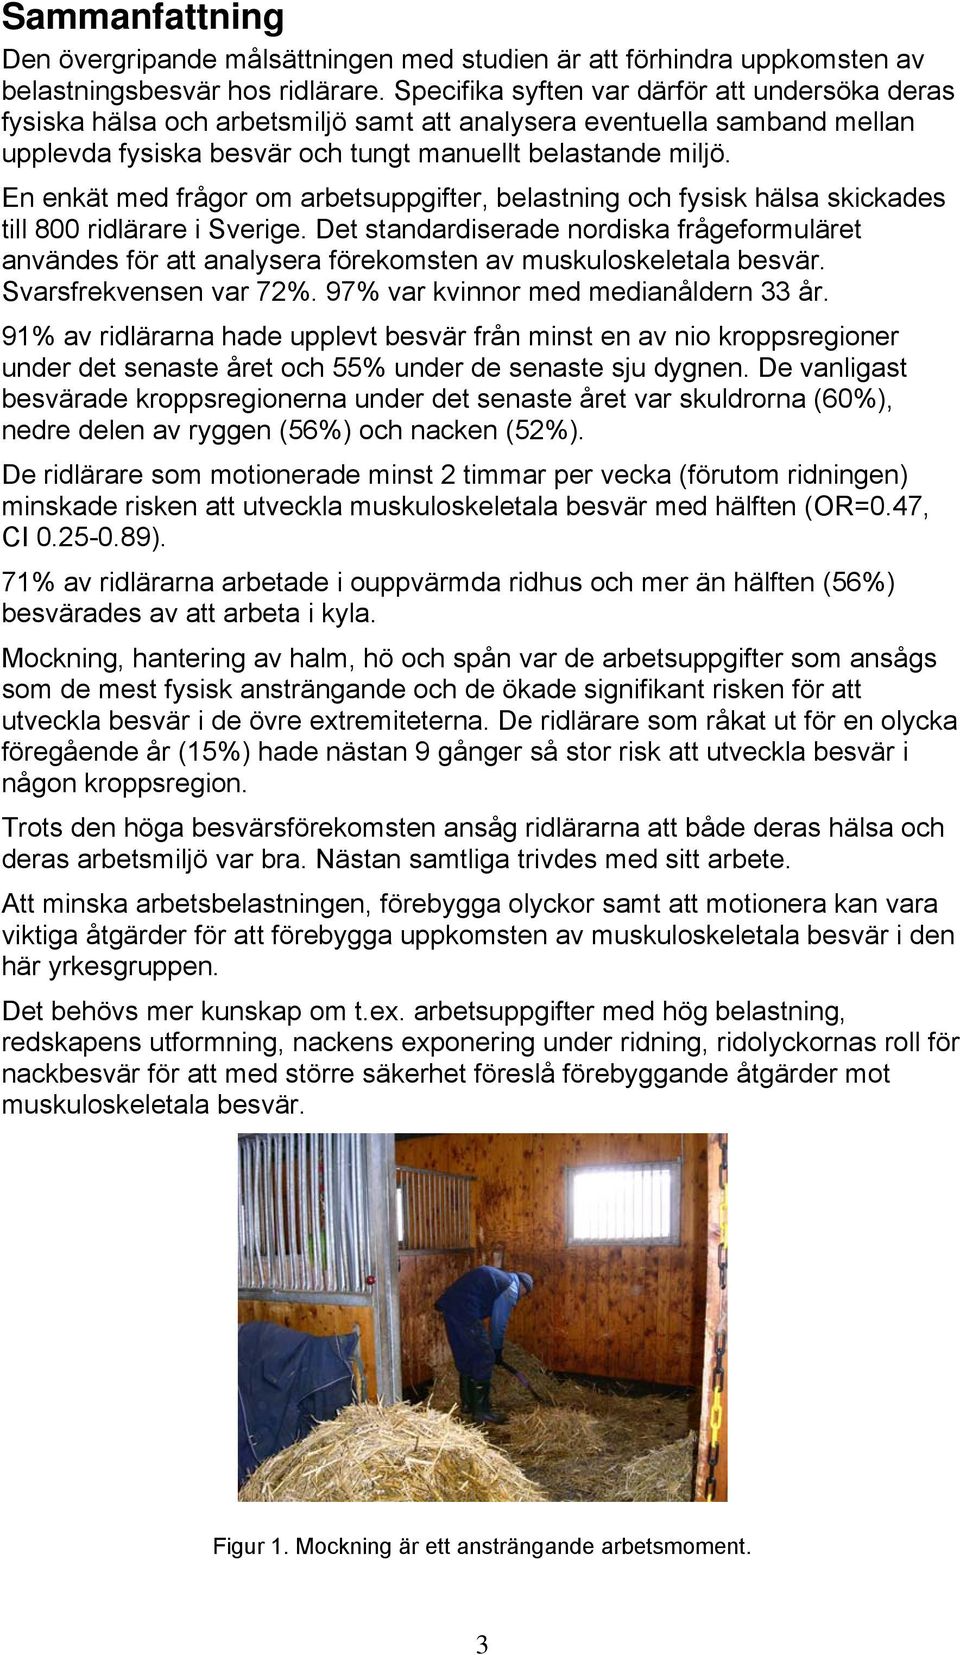 En enkät med frågor om arbetsuppgifter, belastning och fysisk hälsa skickades till 800 ridlärare i Sverige.